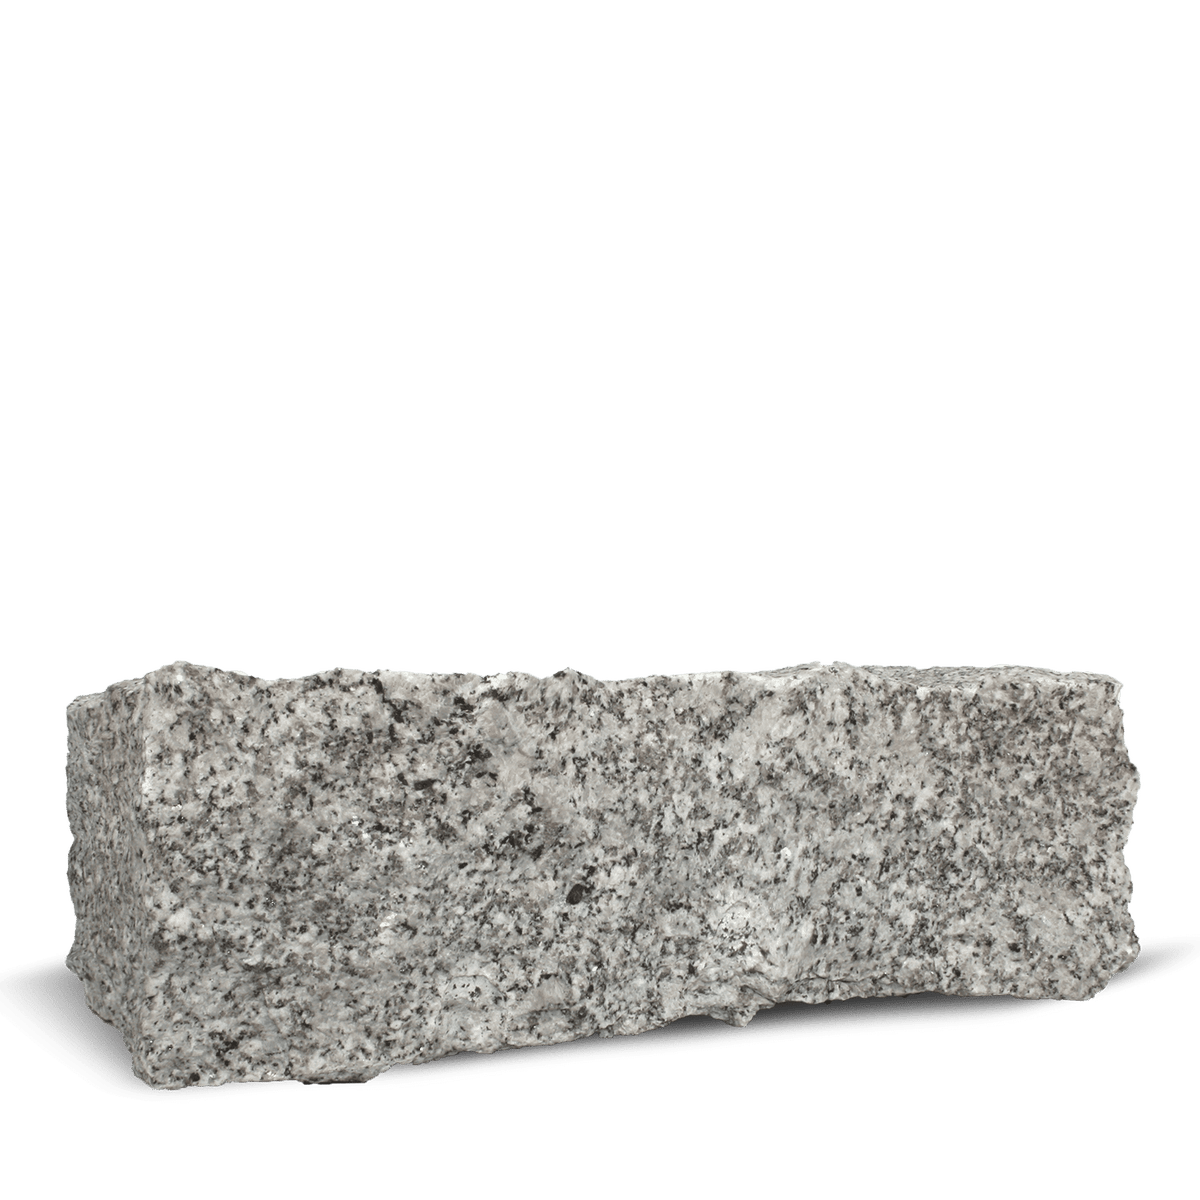 Galamio Granit Randsteine 40*20*15 » gebrochen « 1000kg Palette